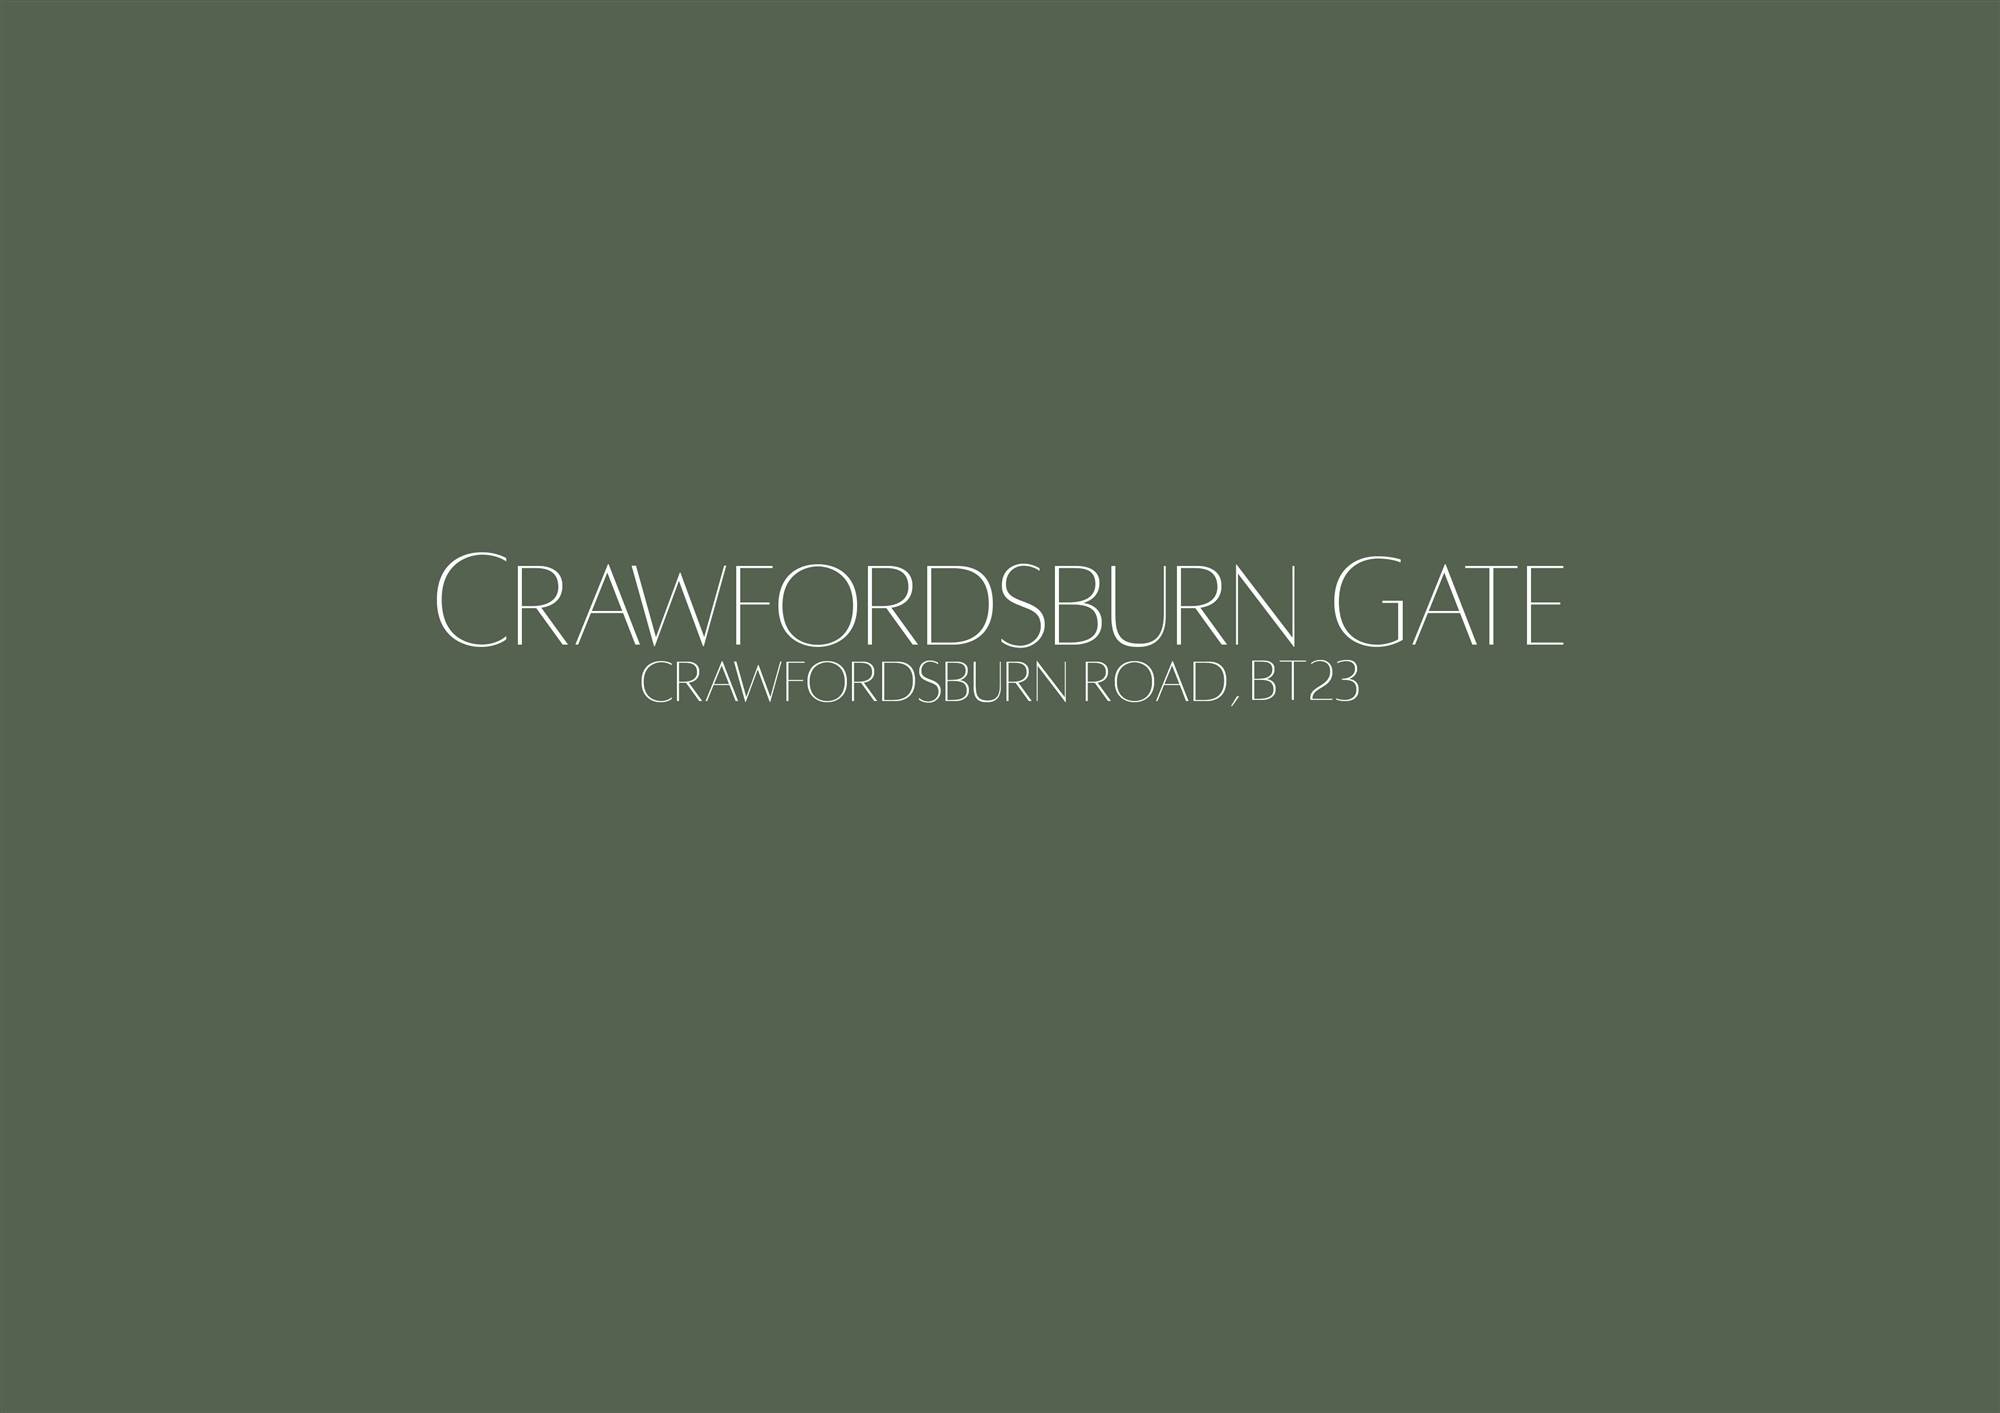 Crawfordsburn Gate